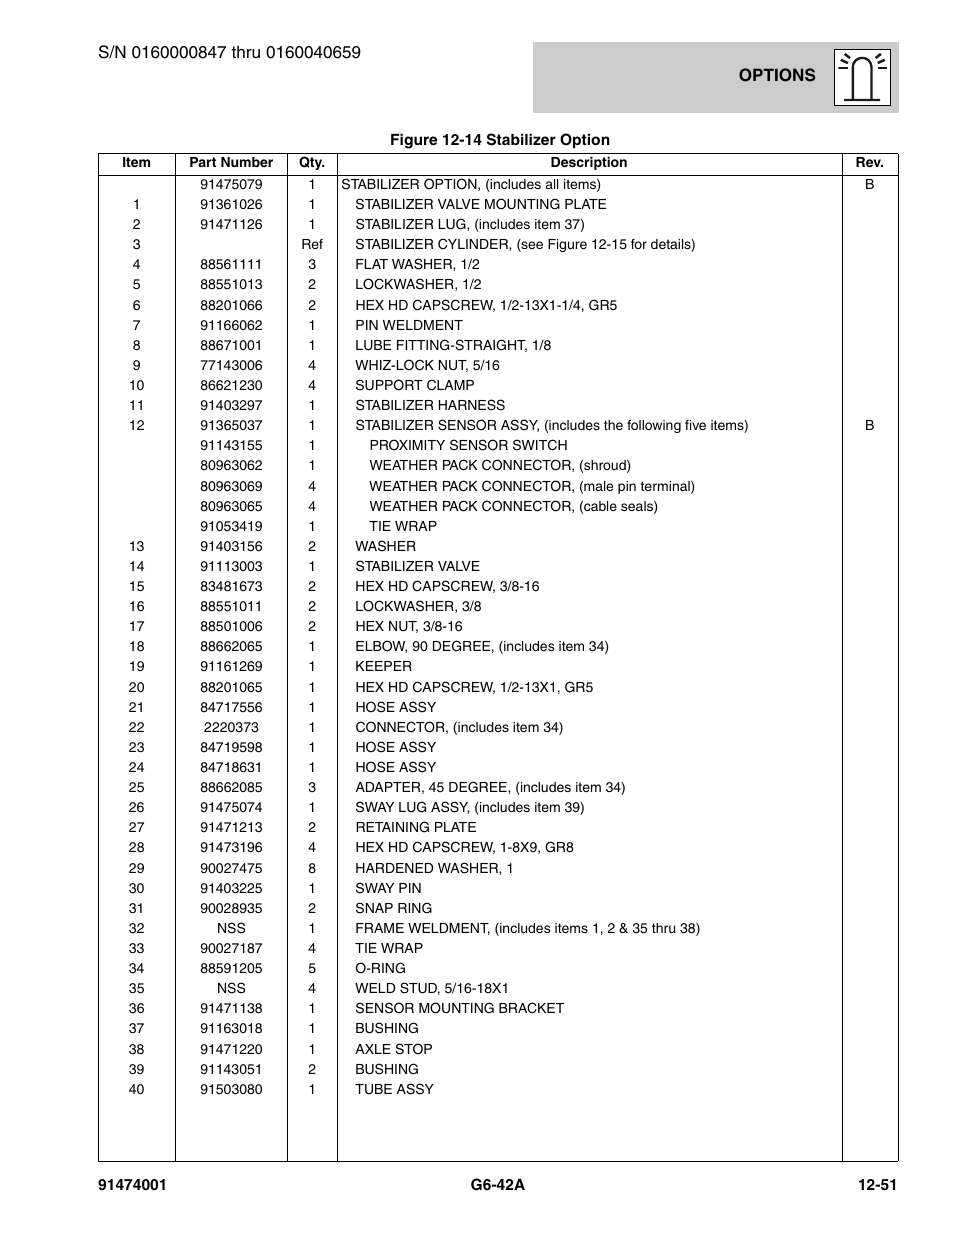 JLG G6-42A Parts Manual User Manual | Page 695 / 826